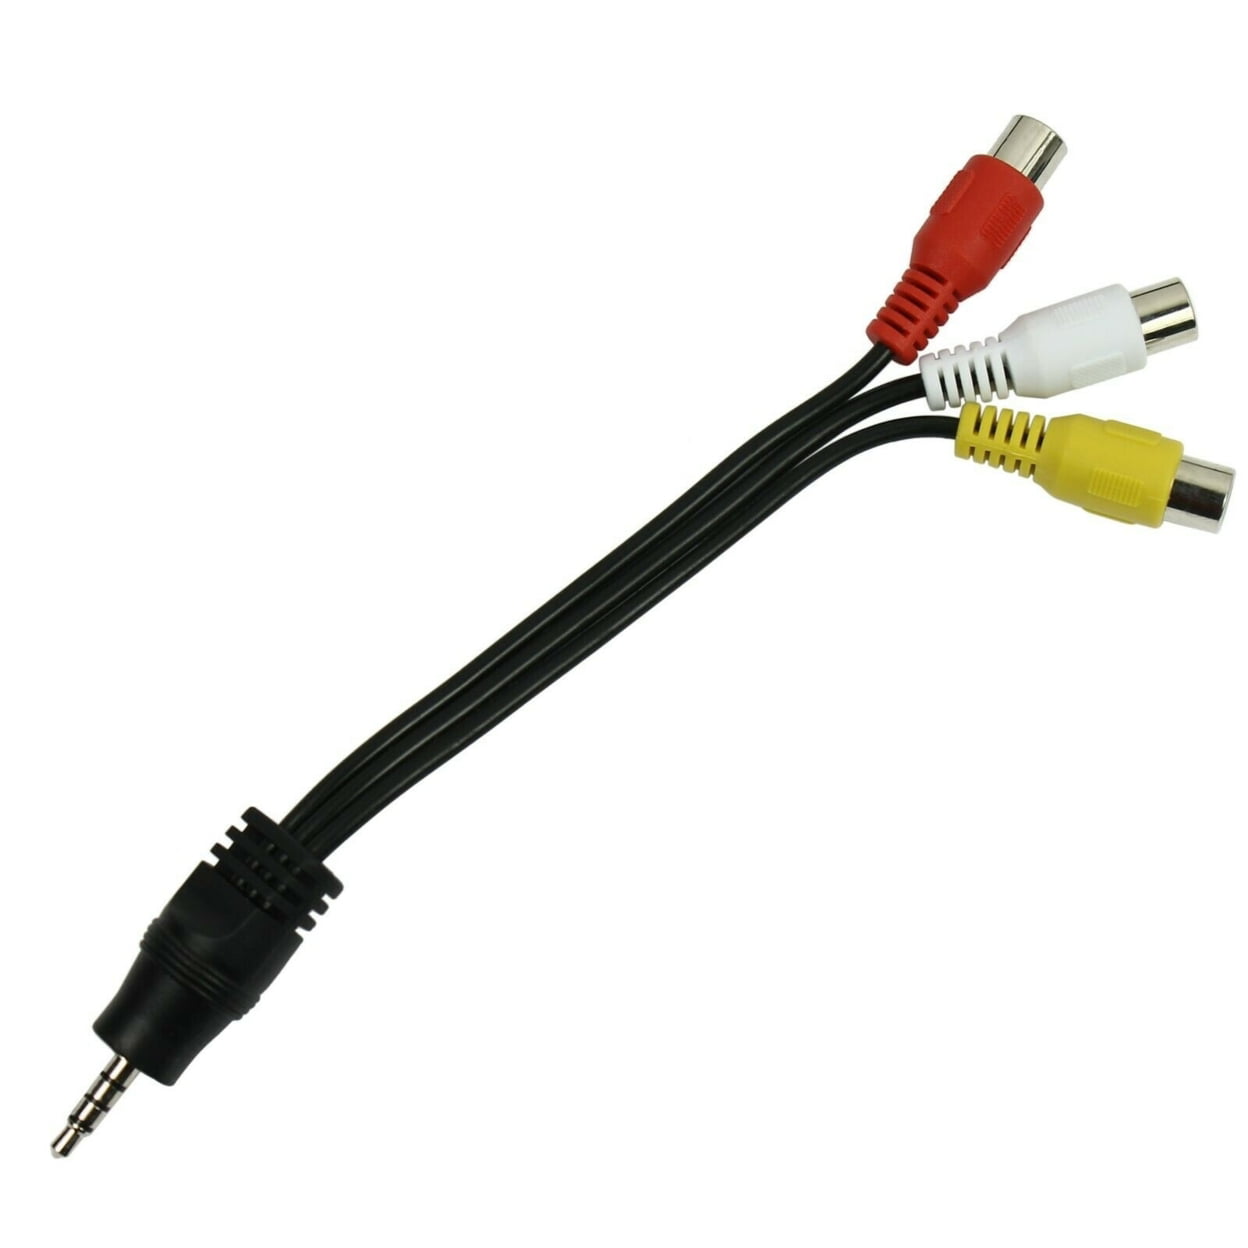 Comprar Cable Jack 3.5 Macho a 2 RCA Macho de 10 M Online - Sonicolor